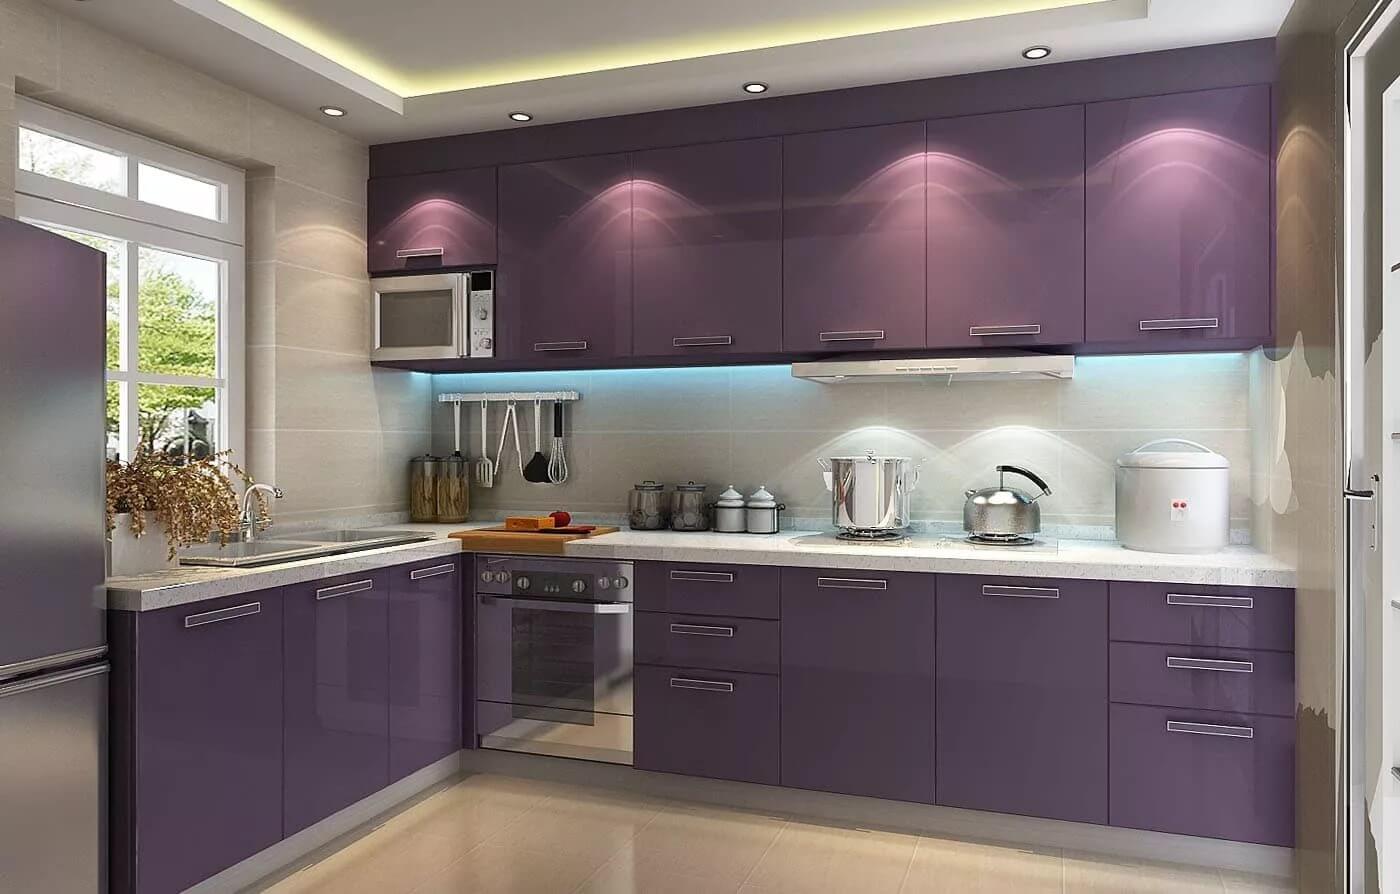 На фото: кухня в фиолетовых тонах